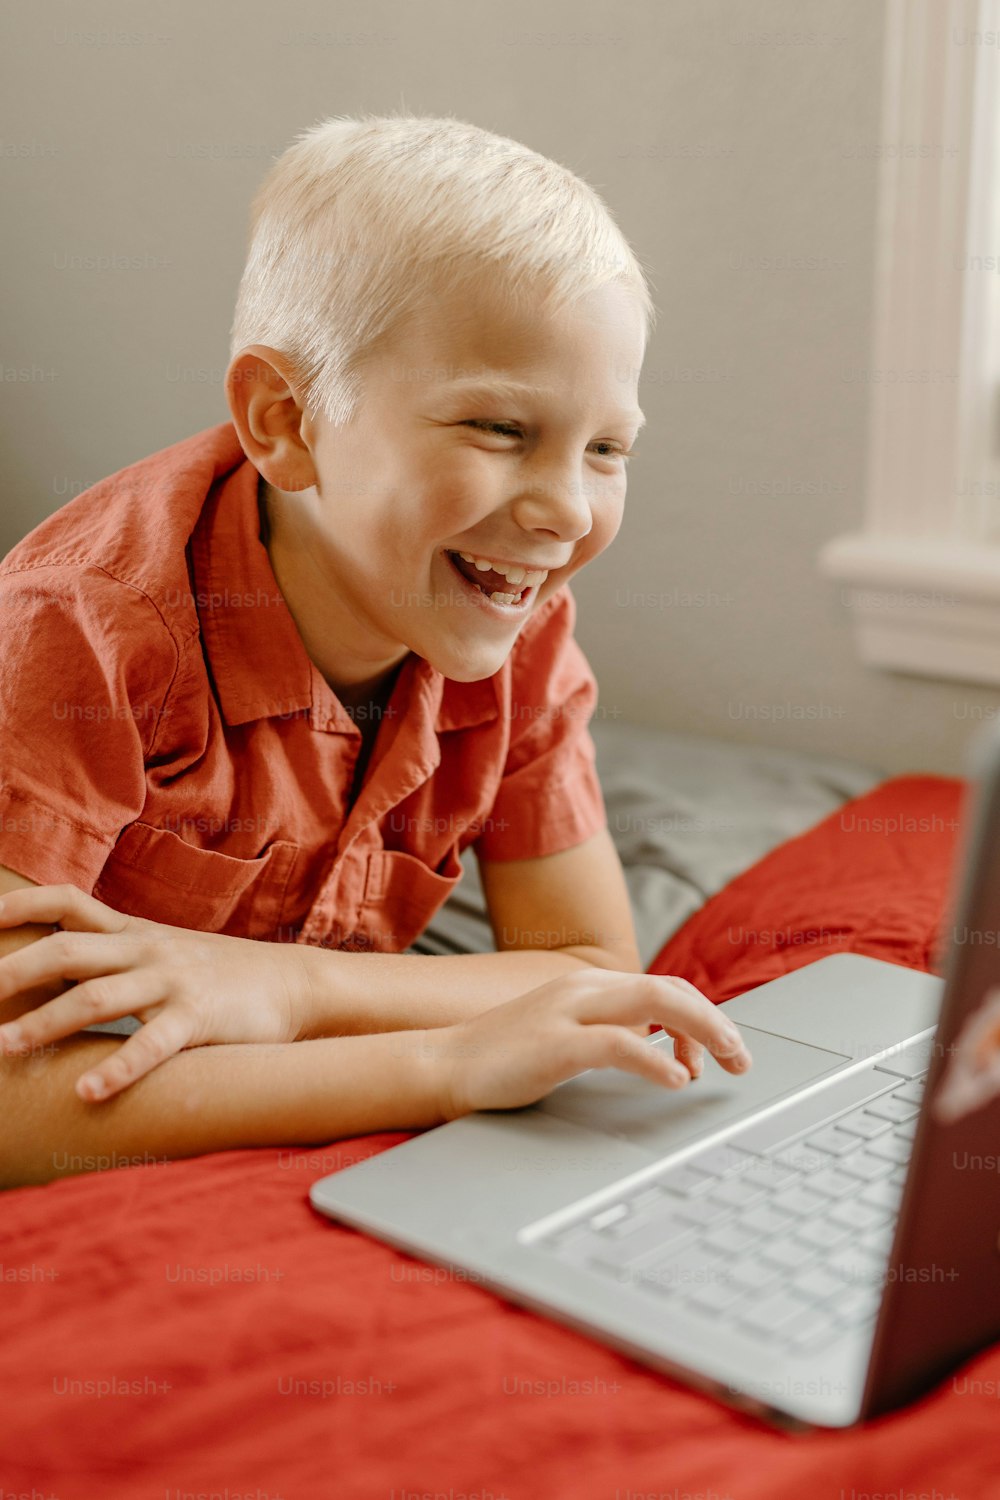 Ein kleiner Junge lächelt, während er auf einen Laptop schaut